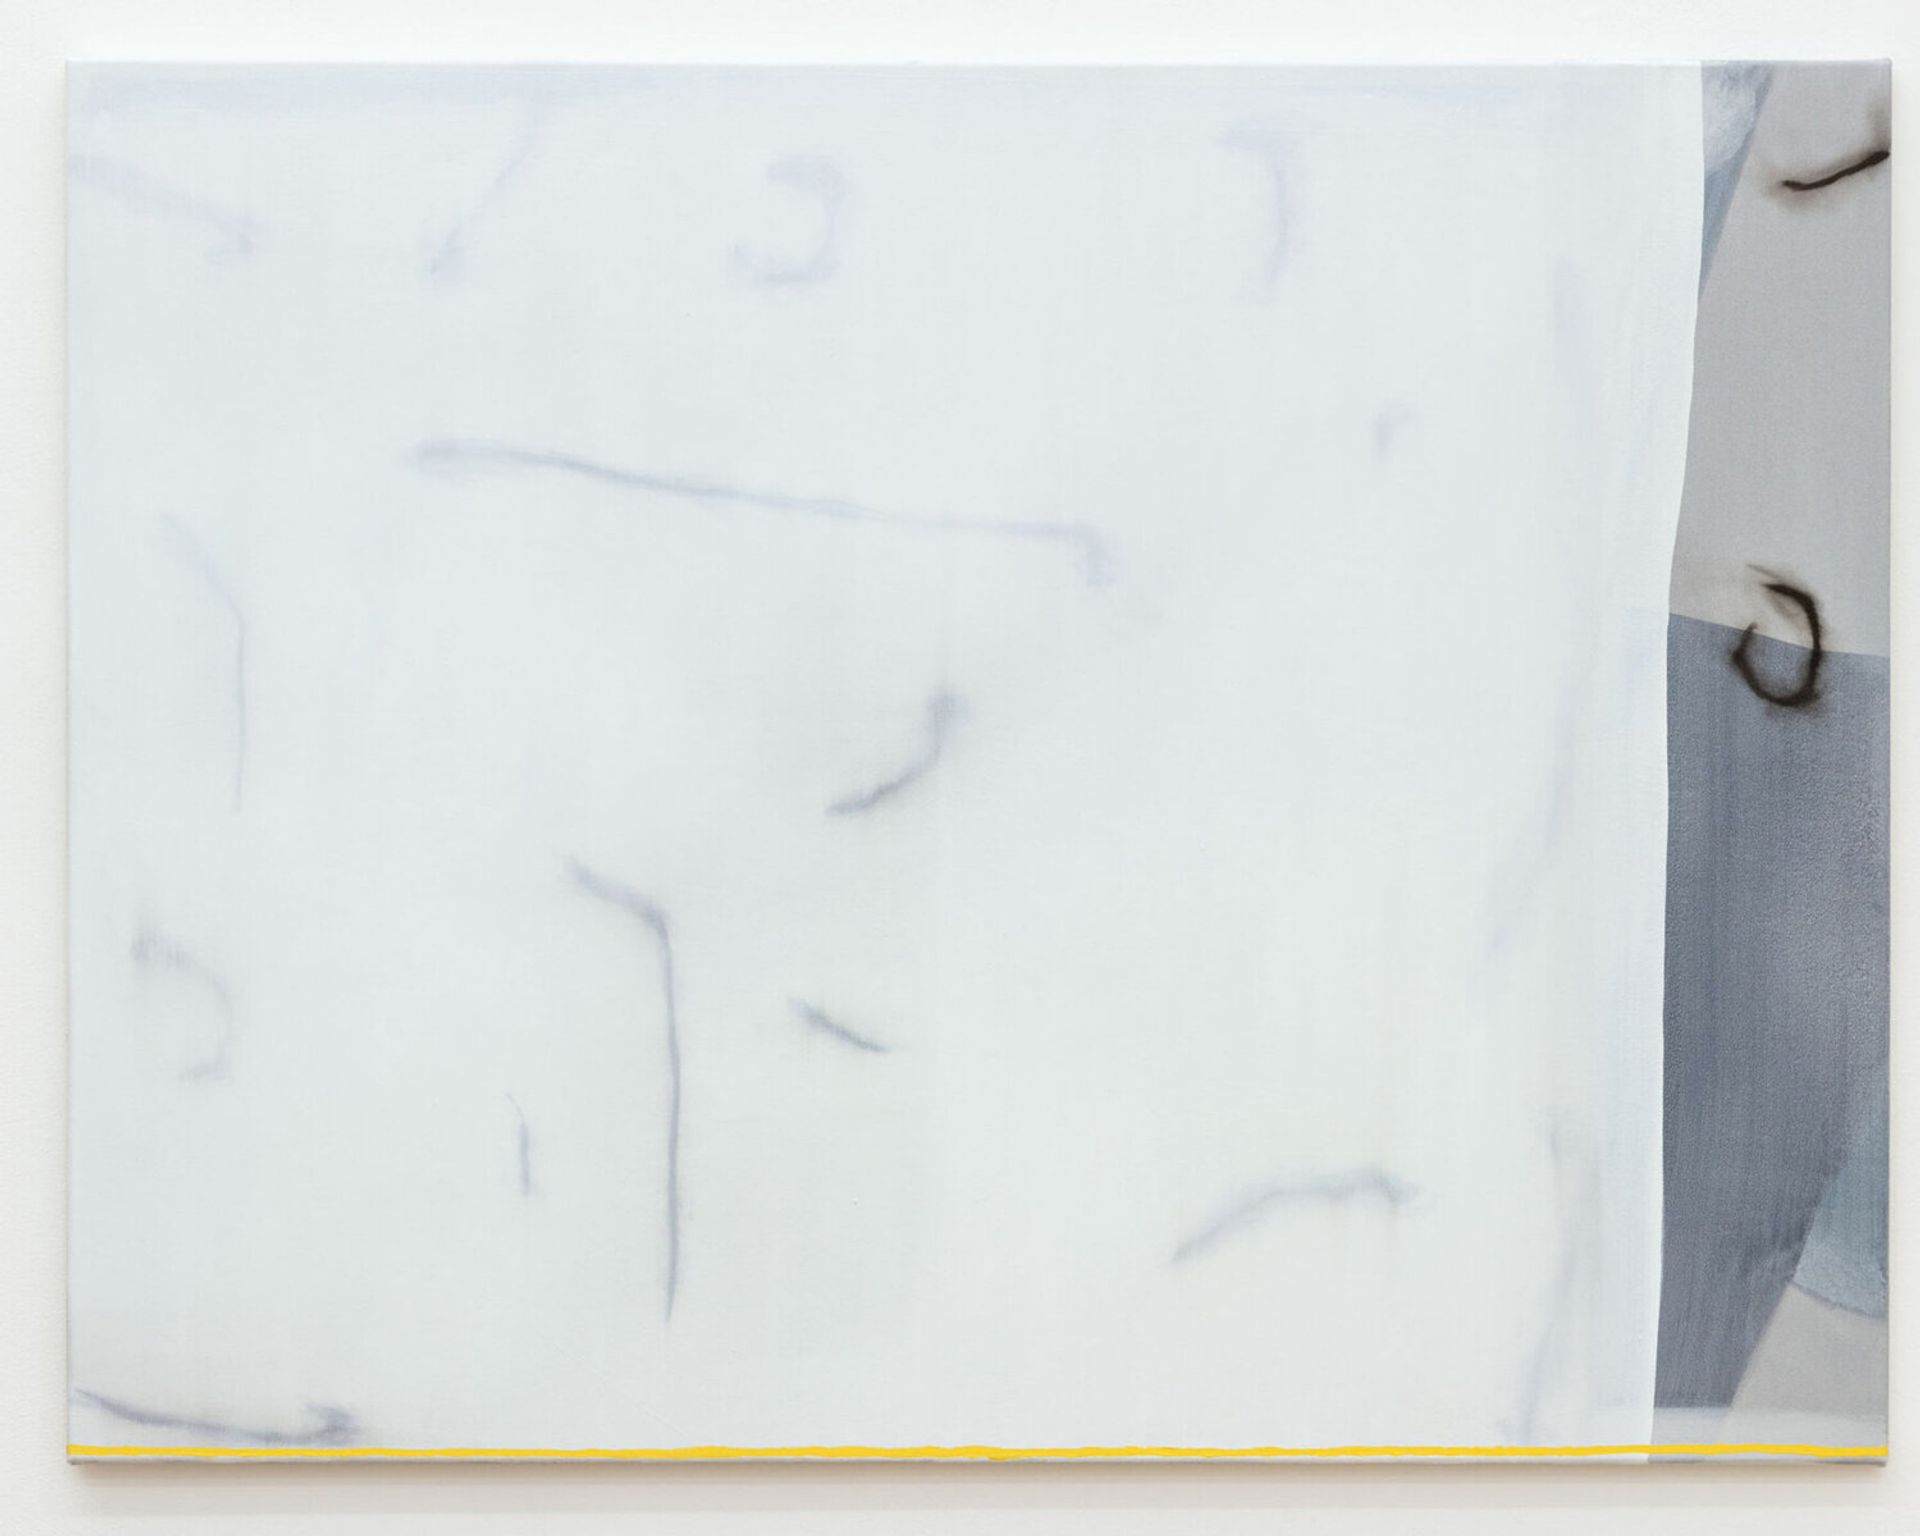 Malte Zenses, schnelle Zeichnung von einer schönen, Hausfassade (Prenzlauer Berg), 2020, lacquer and oil on canvas, 100 × 130 cm